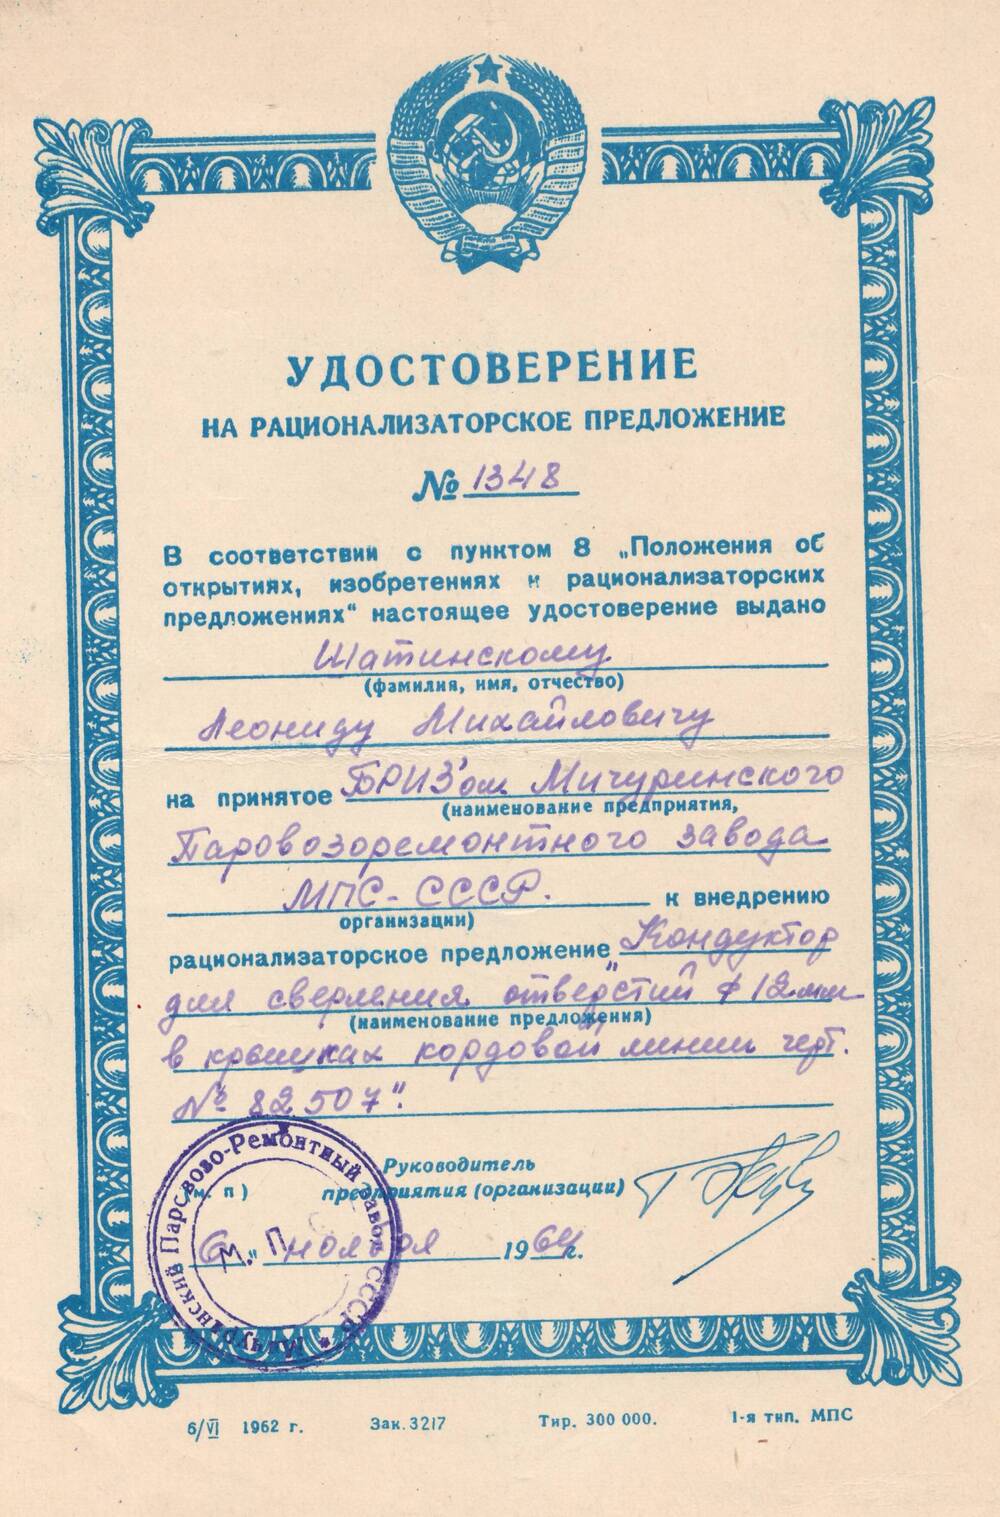 Удостоверение на рационализаторское предложение №1348, выданное Шатинскому Леониду Михайловичу